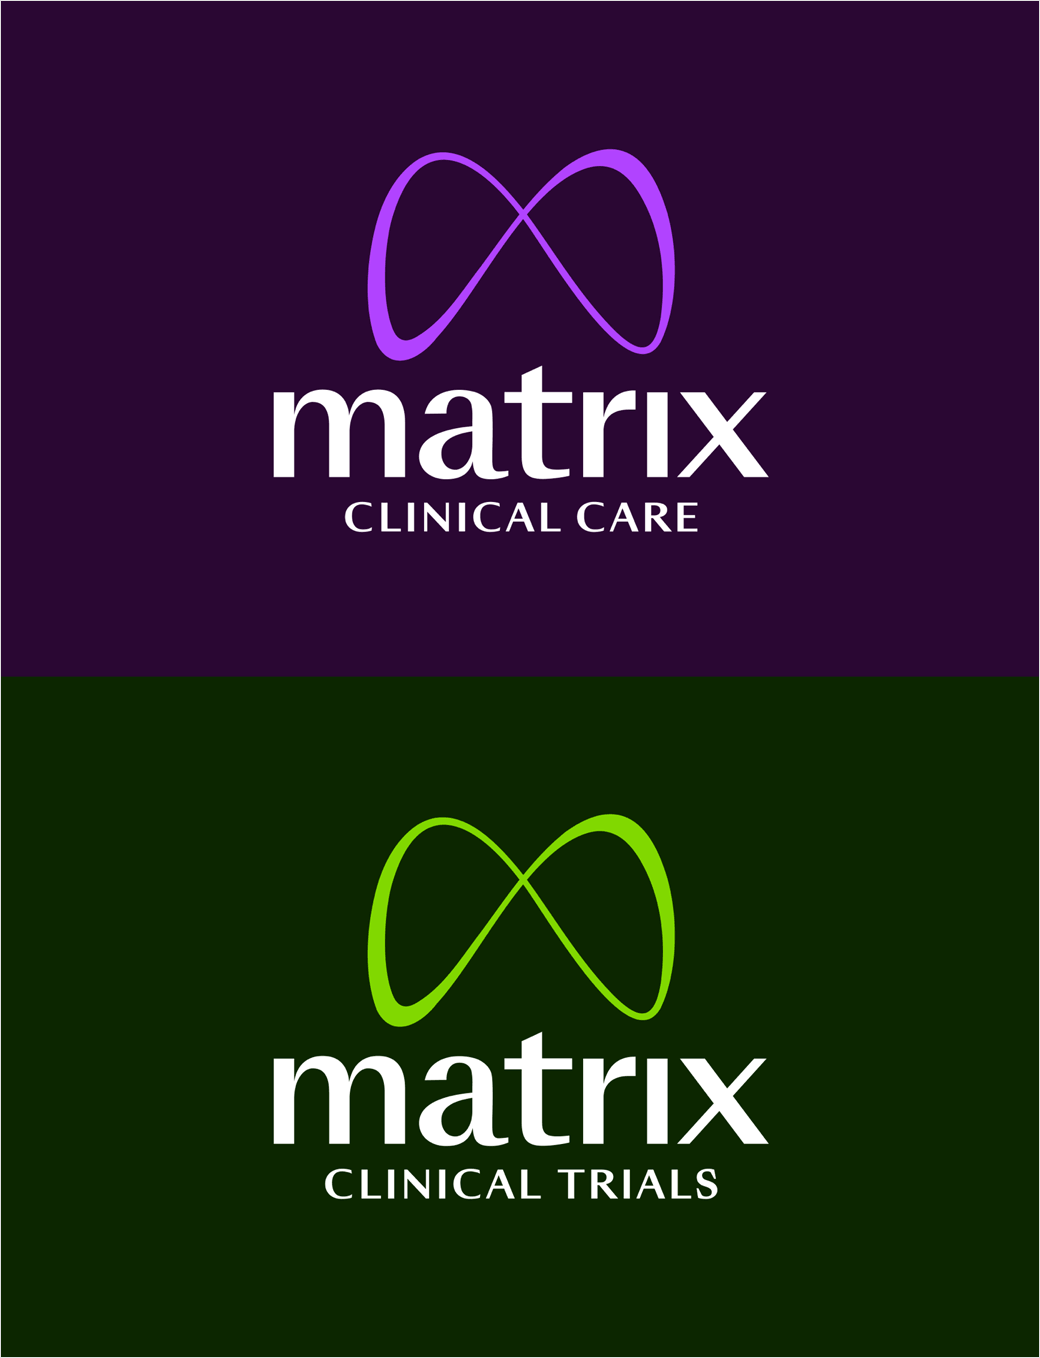 matrix medical network